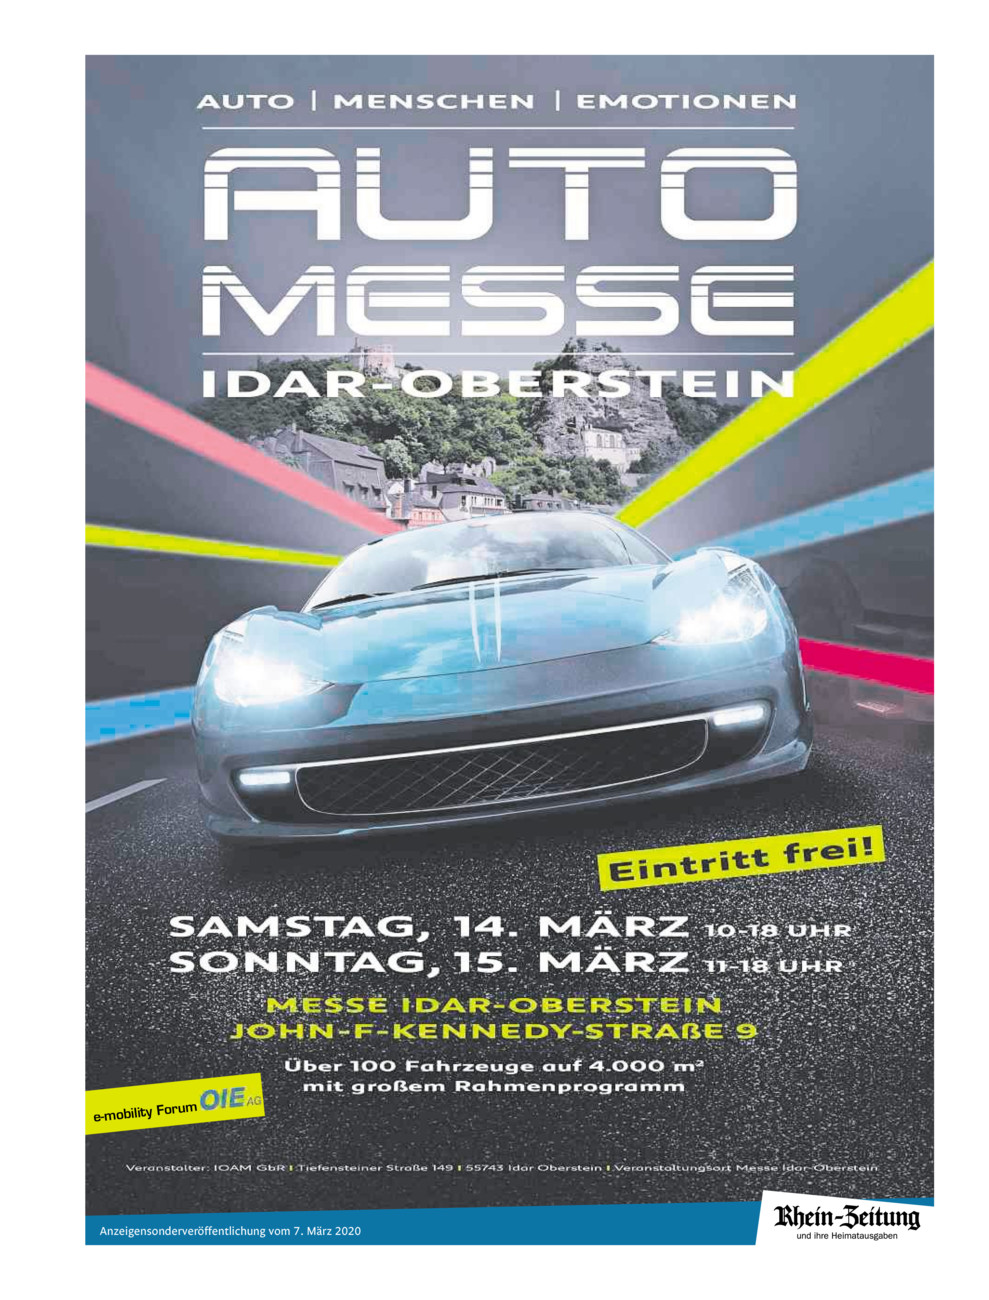 8. Idar-Obersteiner Automesse